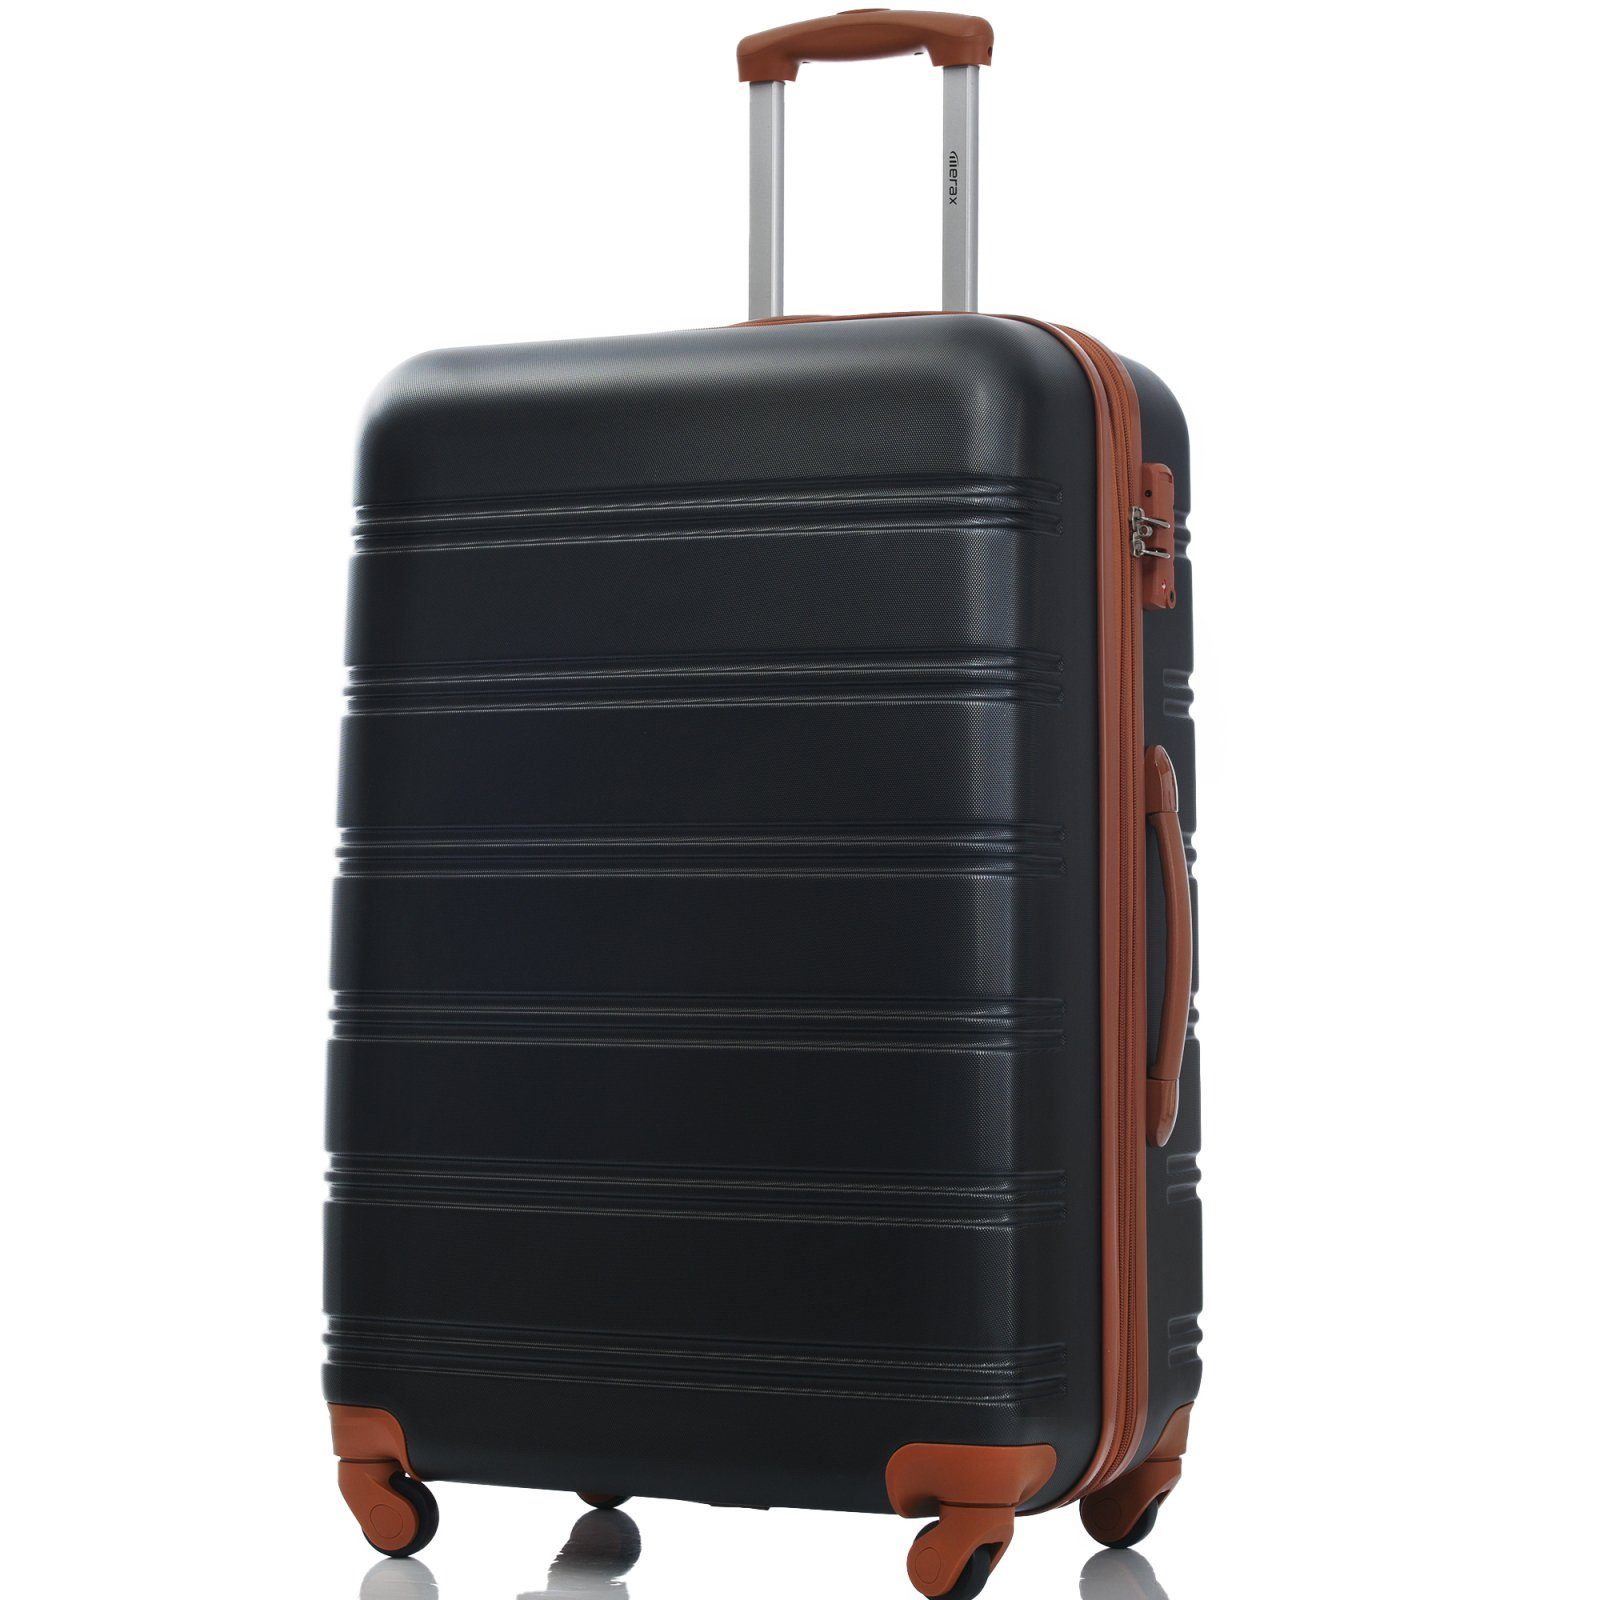 SEEZSSA Koffer Rollkoffer mit Handgepäck 4 Rolle aus ABS-Material, , Rollkoffer 65x44.5x27.5cm schwarz+braun